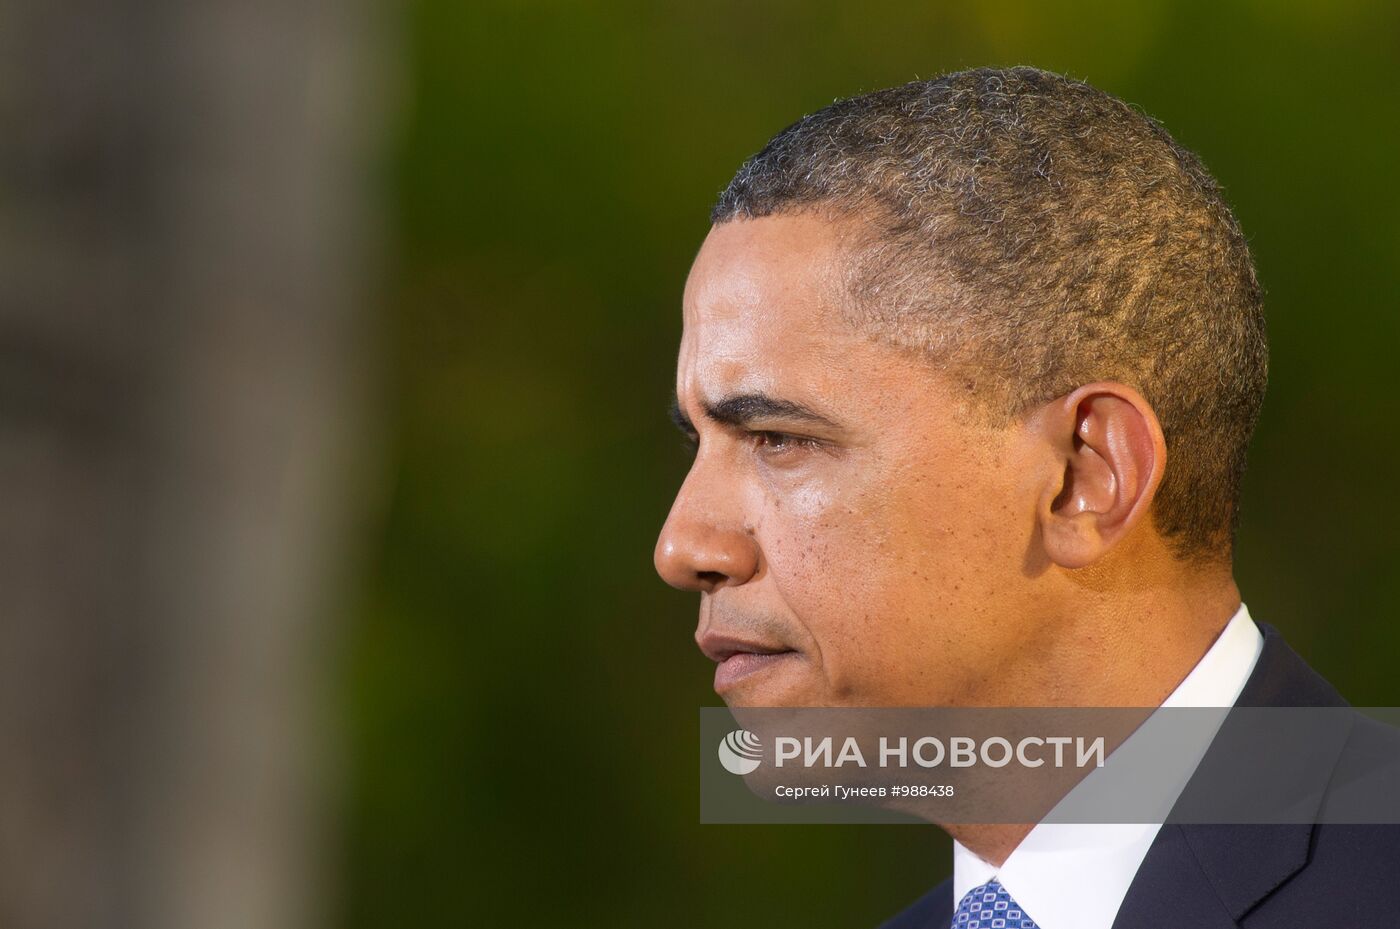 П/к Барака Обамы по итогам саммита АТЭС в Гонолулу